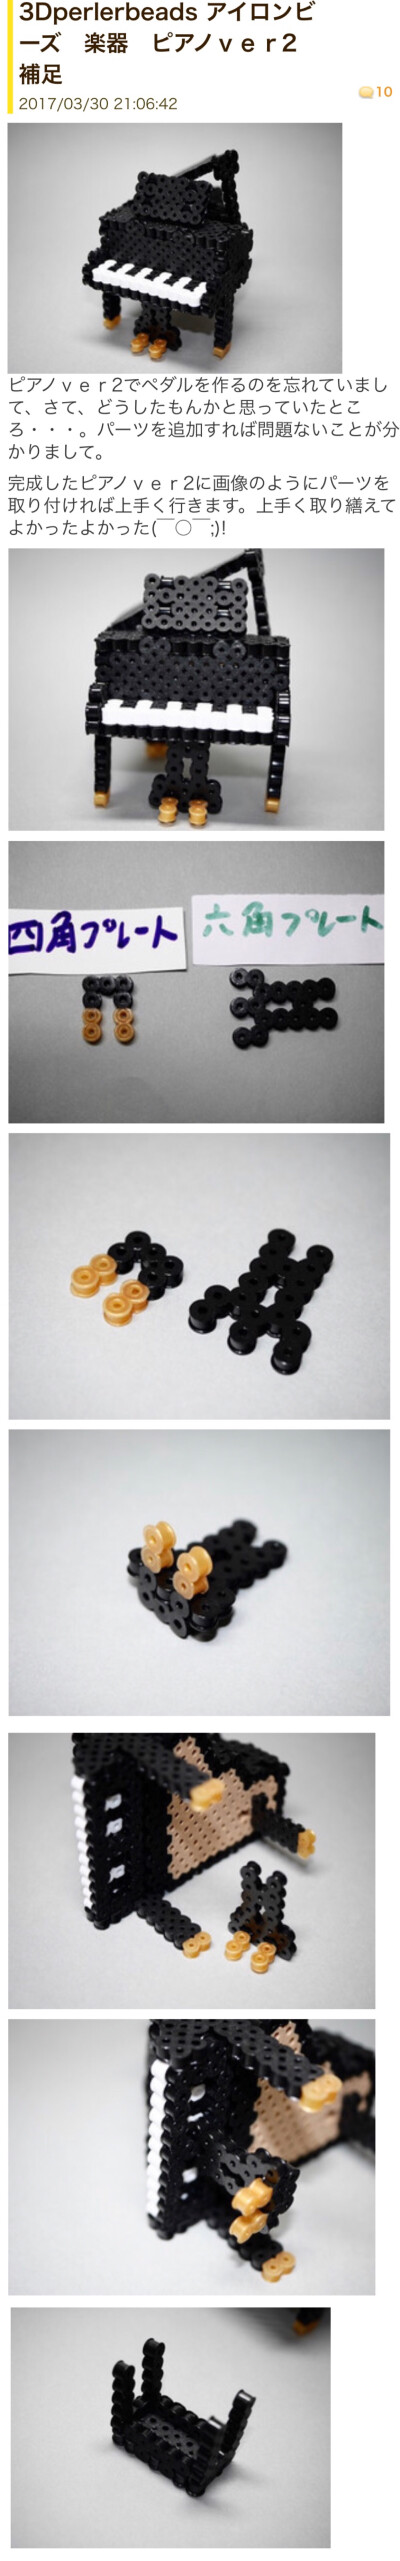 拼豆-立体三角钢琴 3D perler beads 